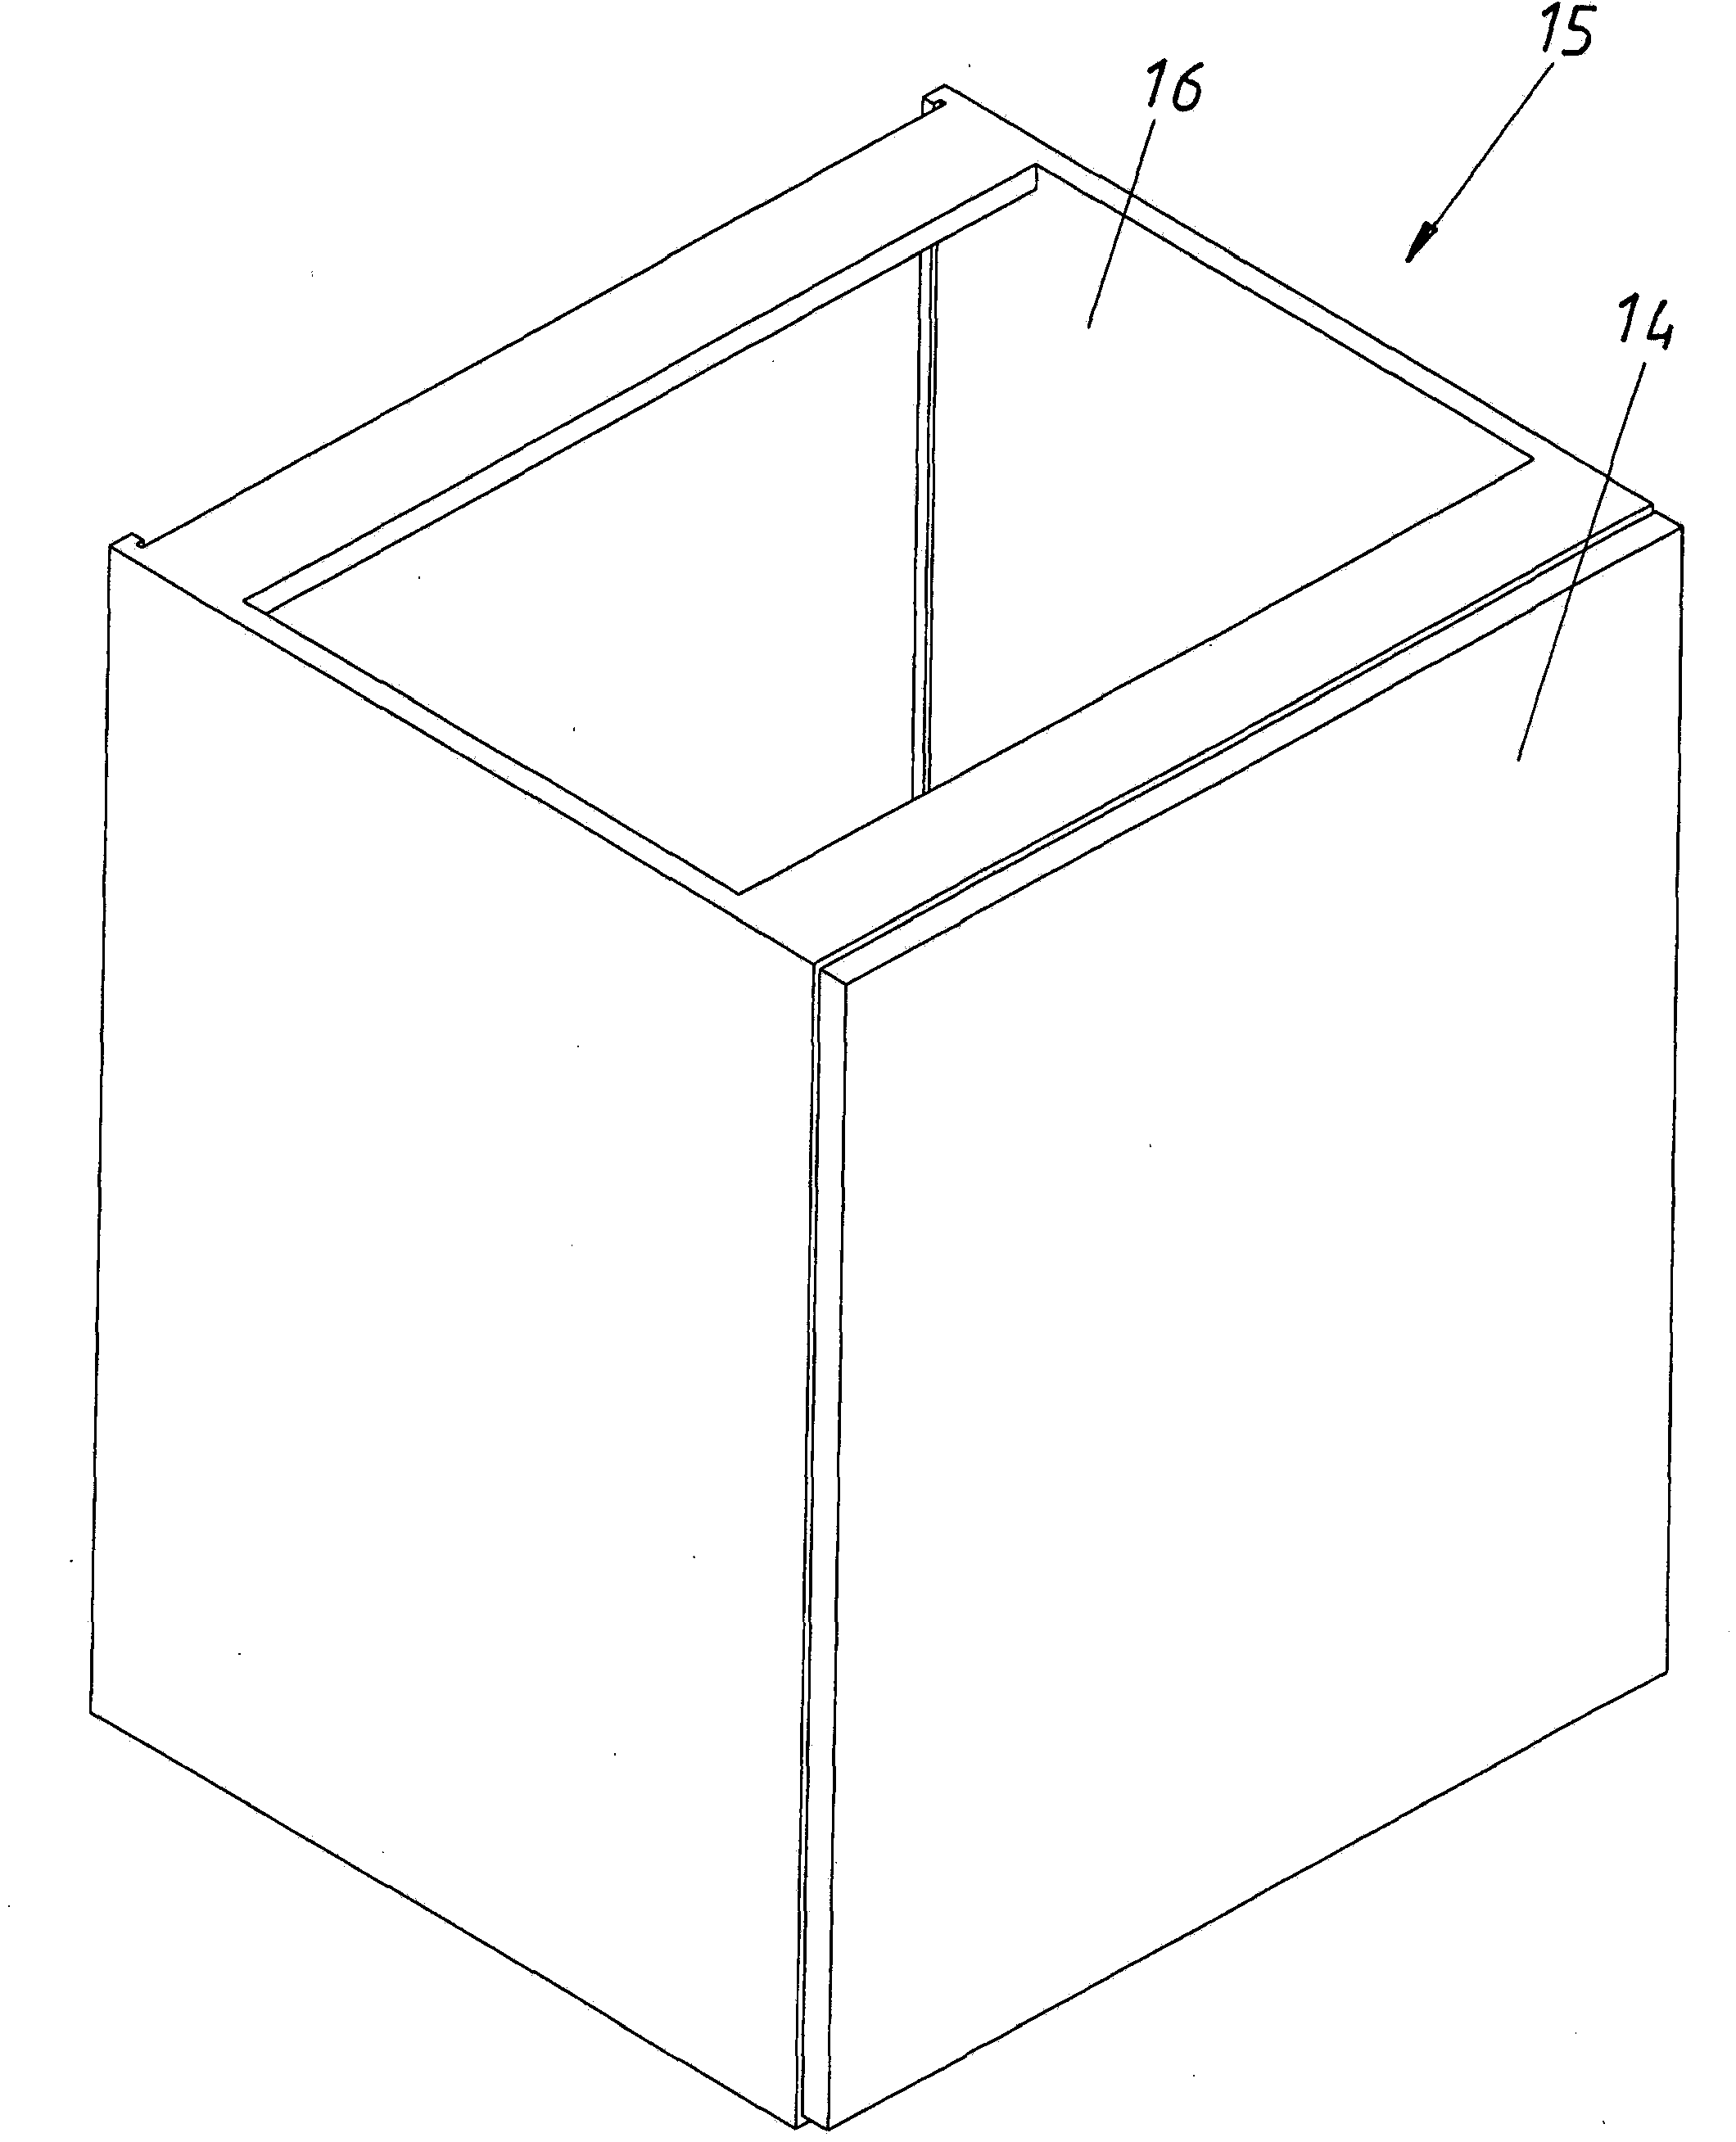 Drawer frame having a tilt adjustment